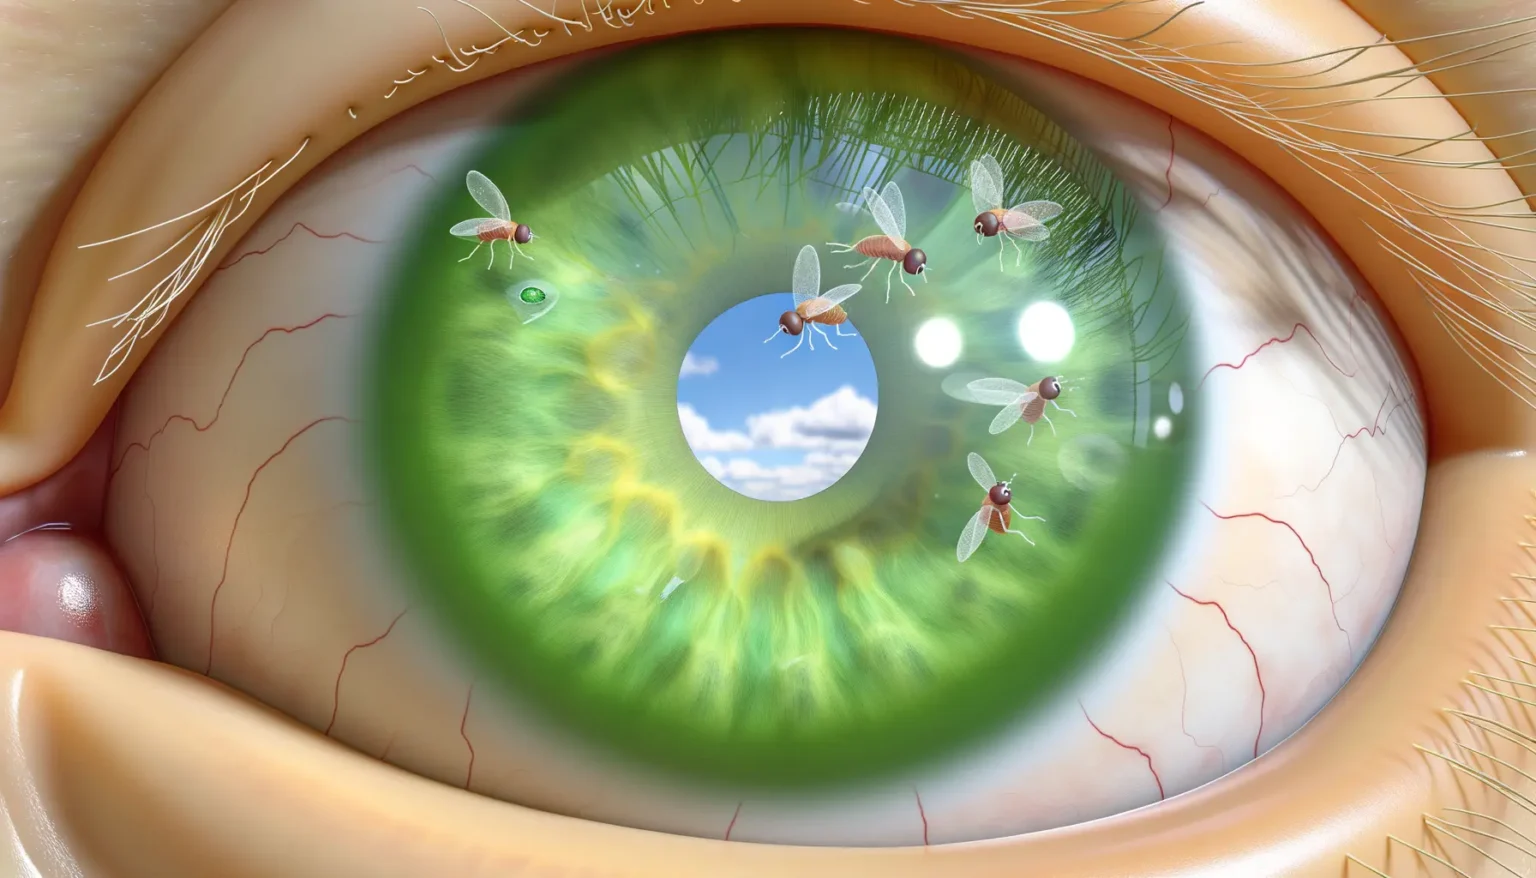 Nahaufnahme eines menschlichen Auges mit grüner Iris, in welcher ein Spiegelbild einer klaren, blauen Himmelsaussicht mit fliegenden Fruchtfliegen zu sehen ist. Die Details des Auges, wie die einzelnen Wimpern und die feinen Blutgefäße auf dem Augapfel, sind deutlich sichtbar.